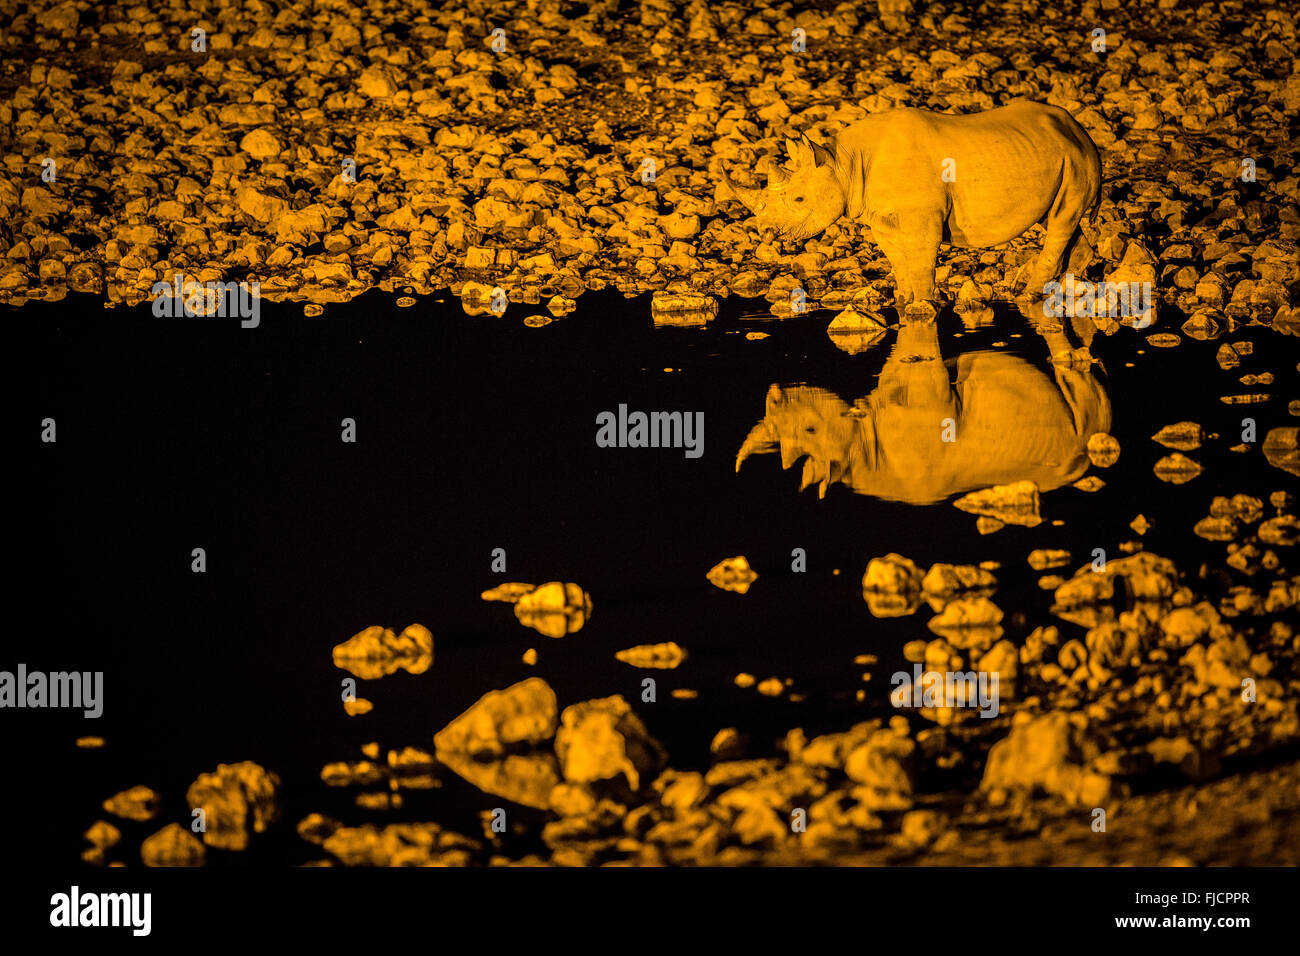 Rhino manger dans un trou d'eau éclairé Banque D'Images